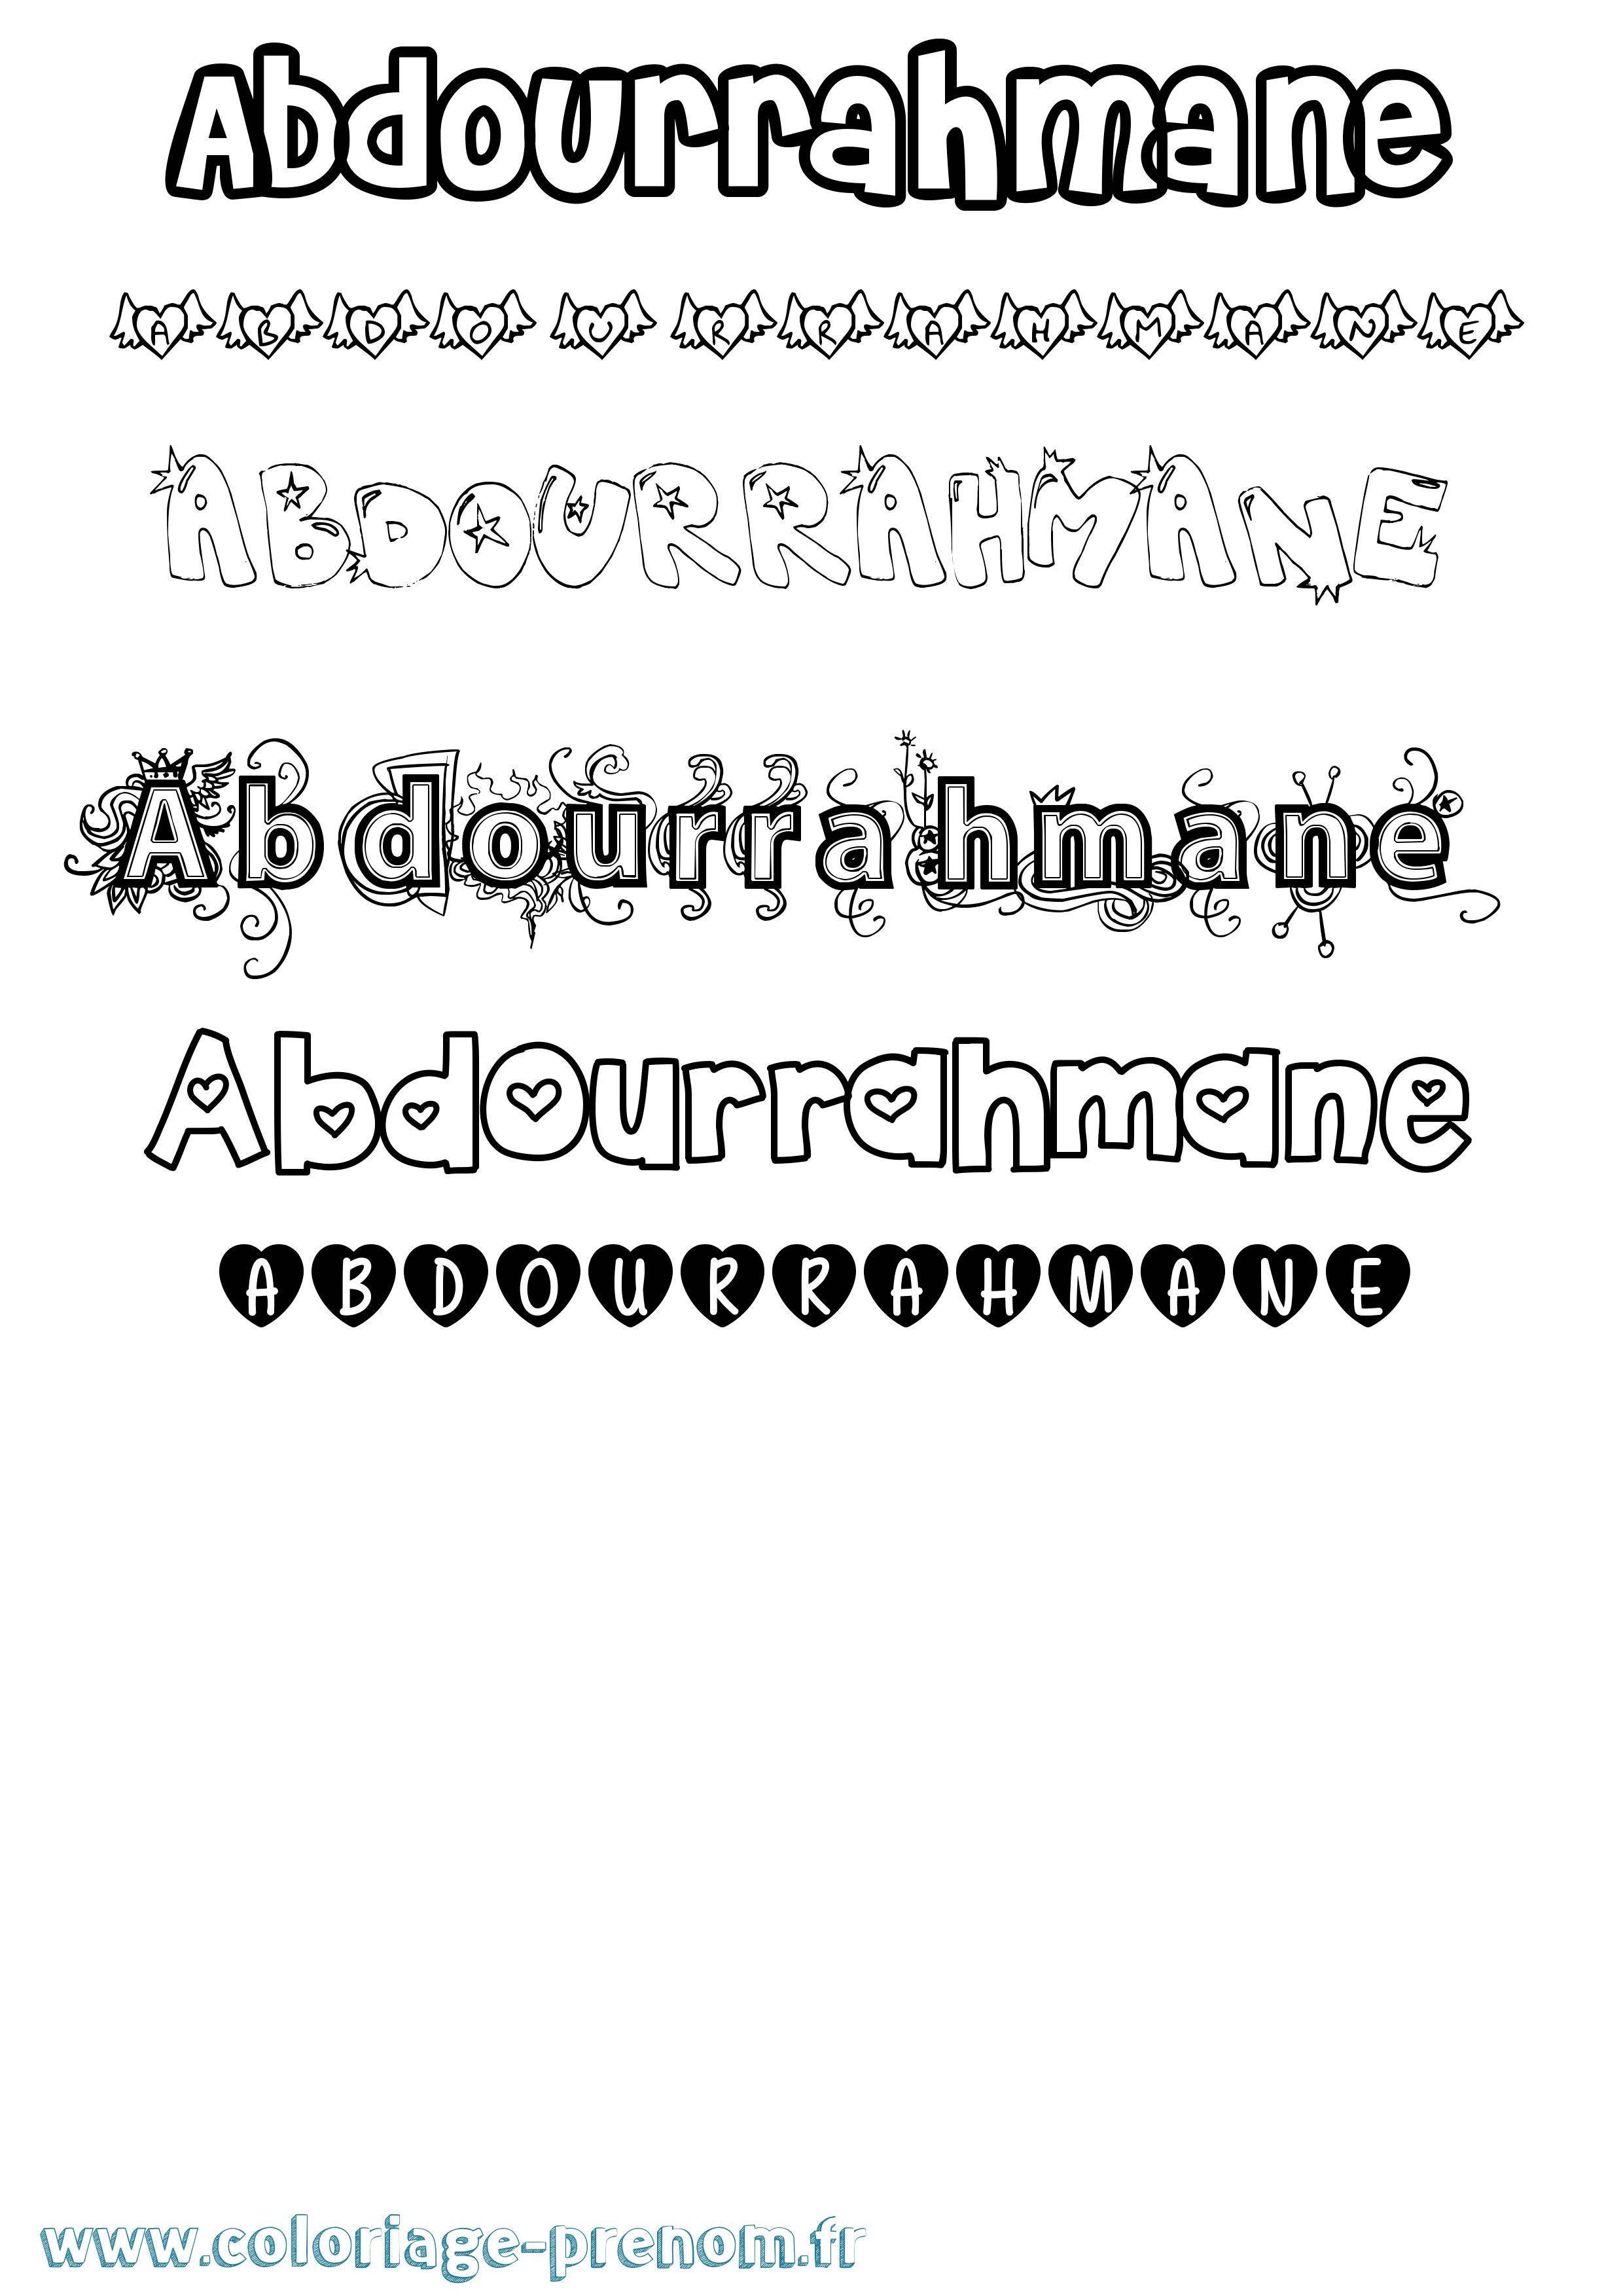 Coloriage prénom Abdourrahmane Girly